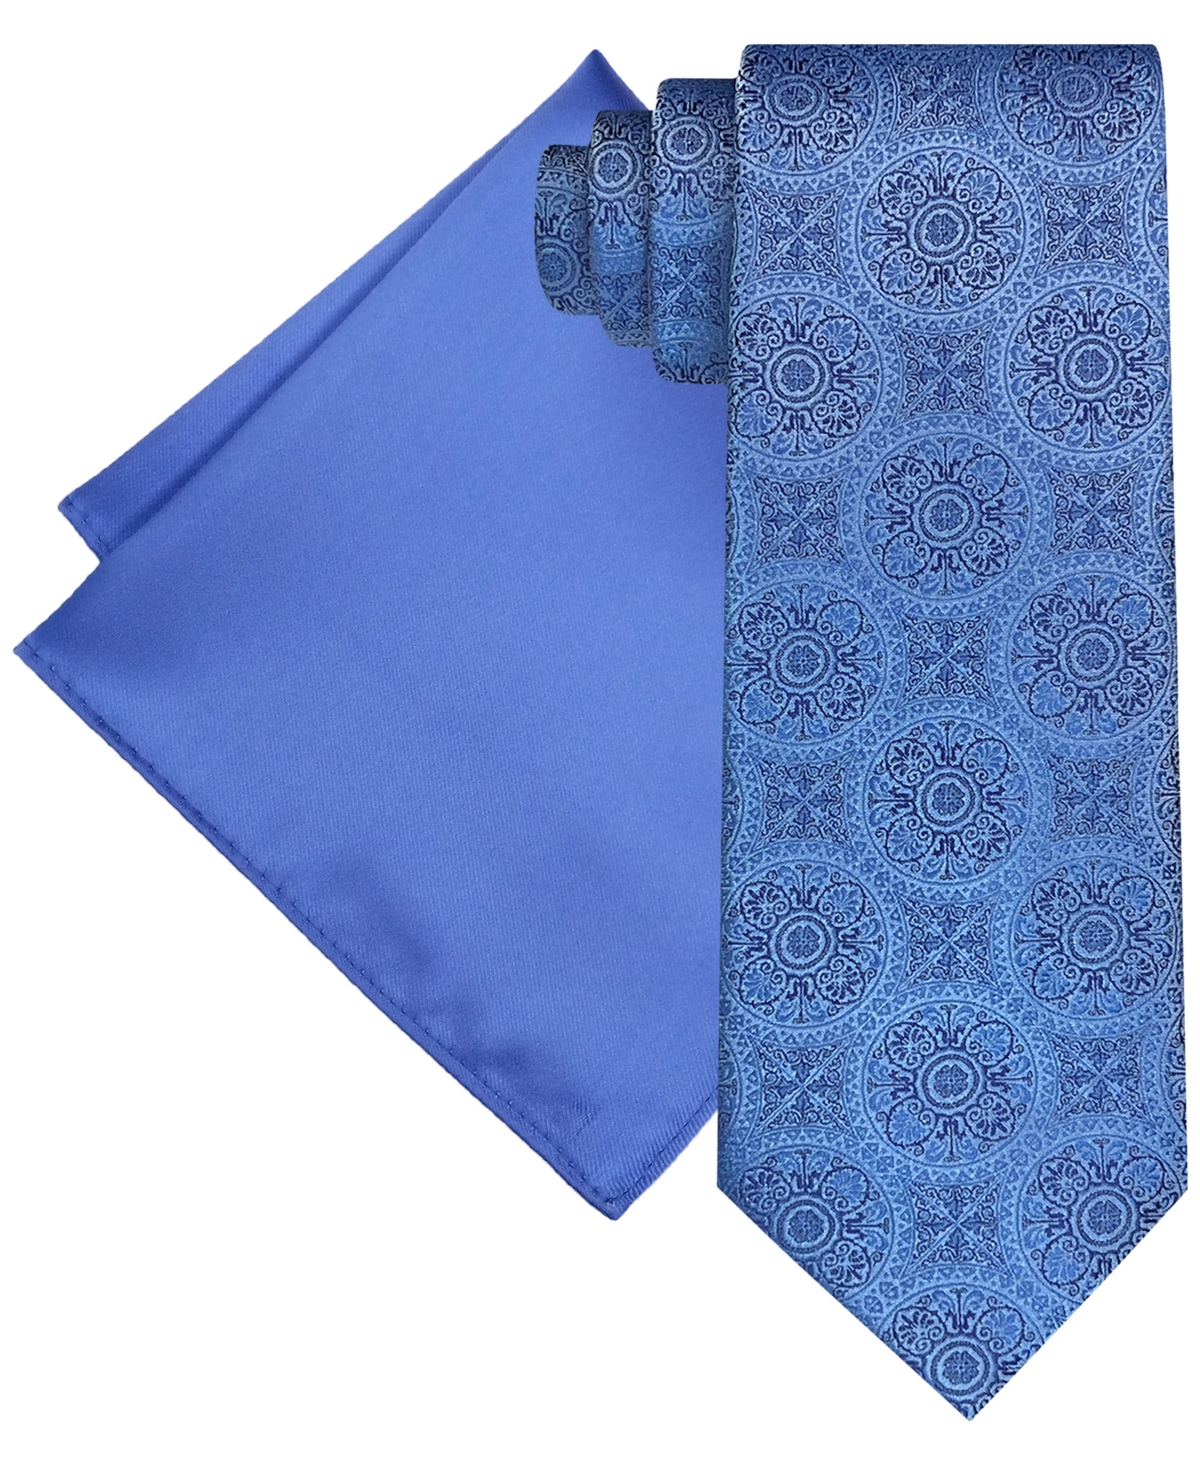 Steve Harvey Men's Extra Long Ornate Medallion Tie & Solid Pocket Square Set In Med Blu,sk